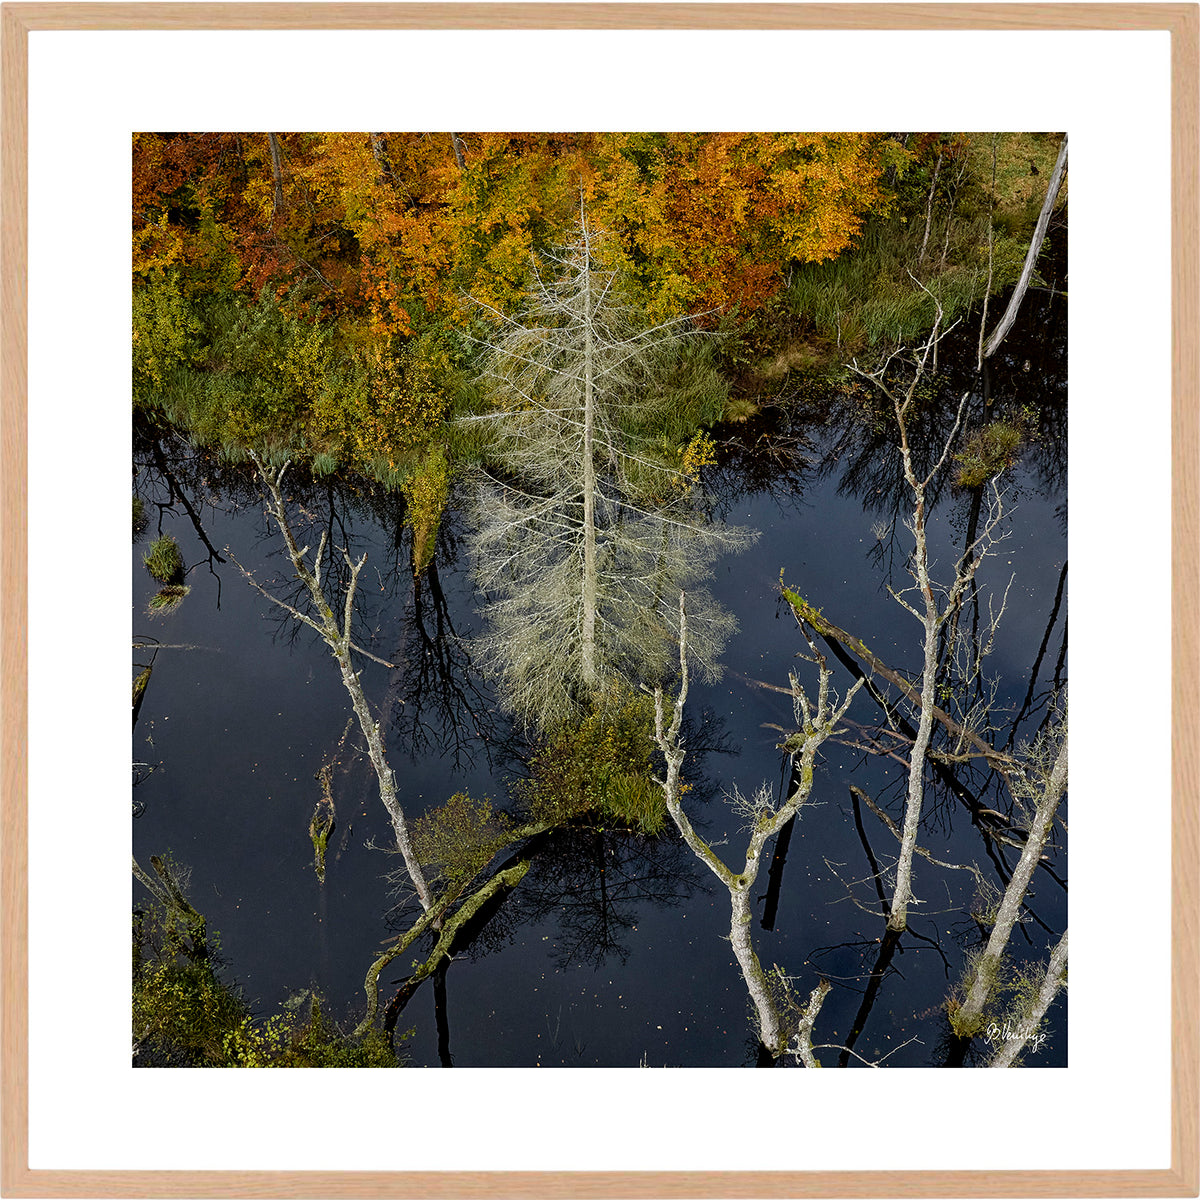 En skovsø med et udgået grantræ. Efterårsfarvede blade på træerne i baggrunden skaber en god kontrast.